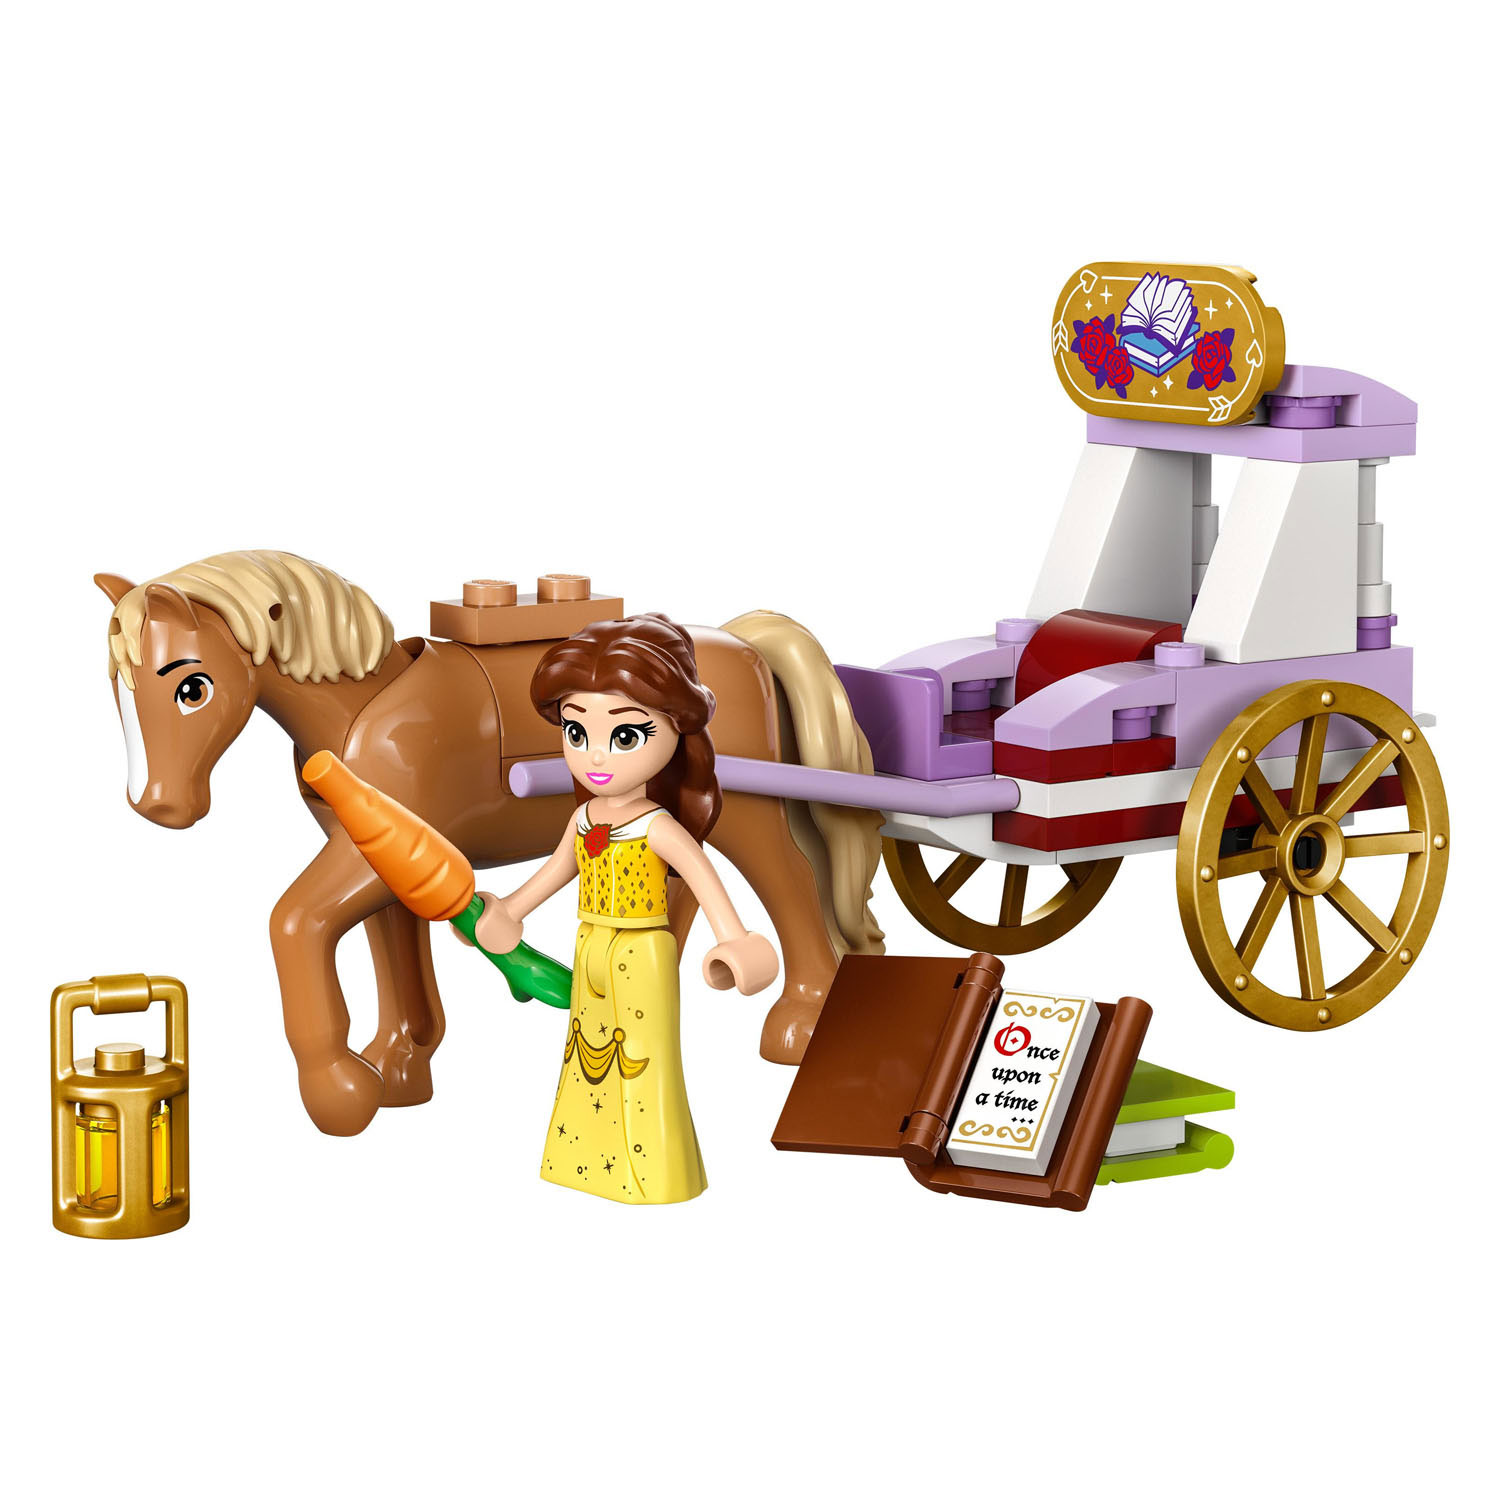 LEGO Disney Prinses 43233 Belle's Paardenkoets